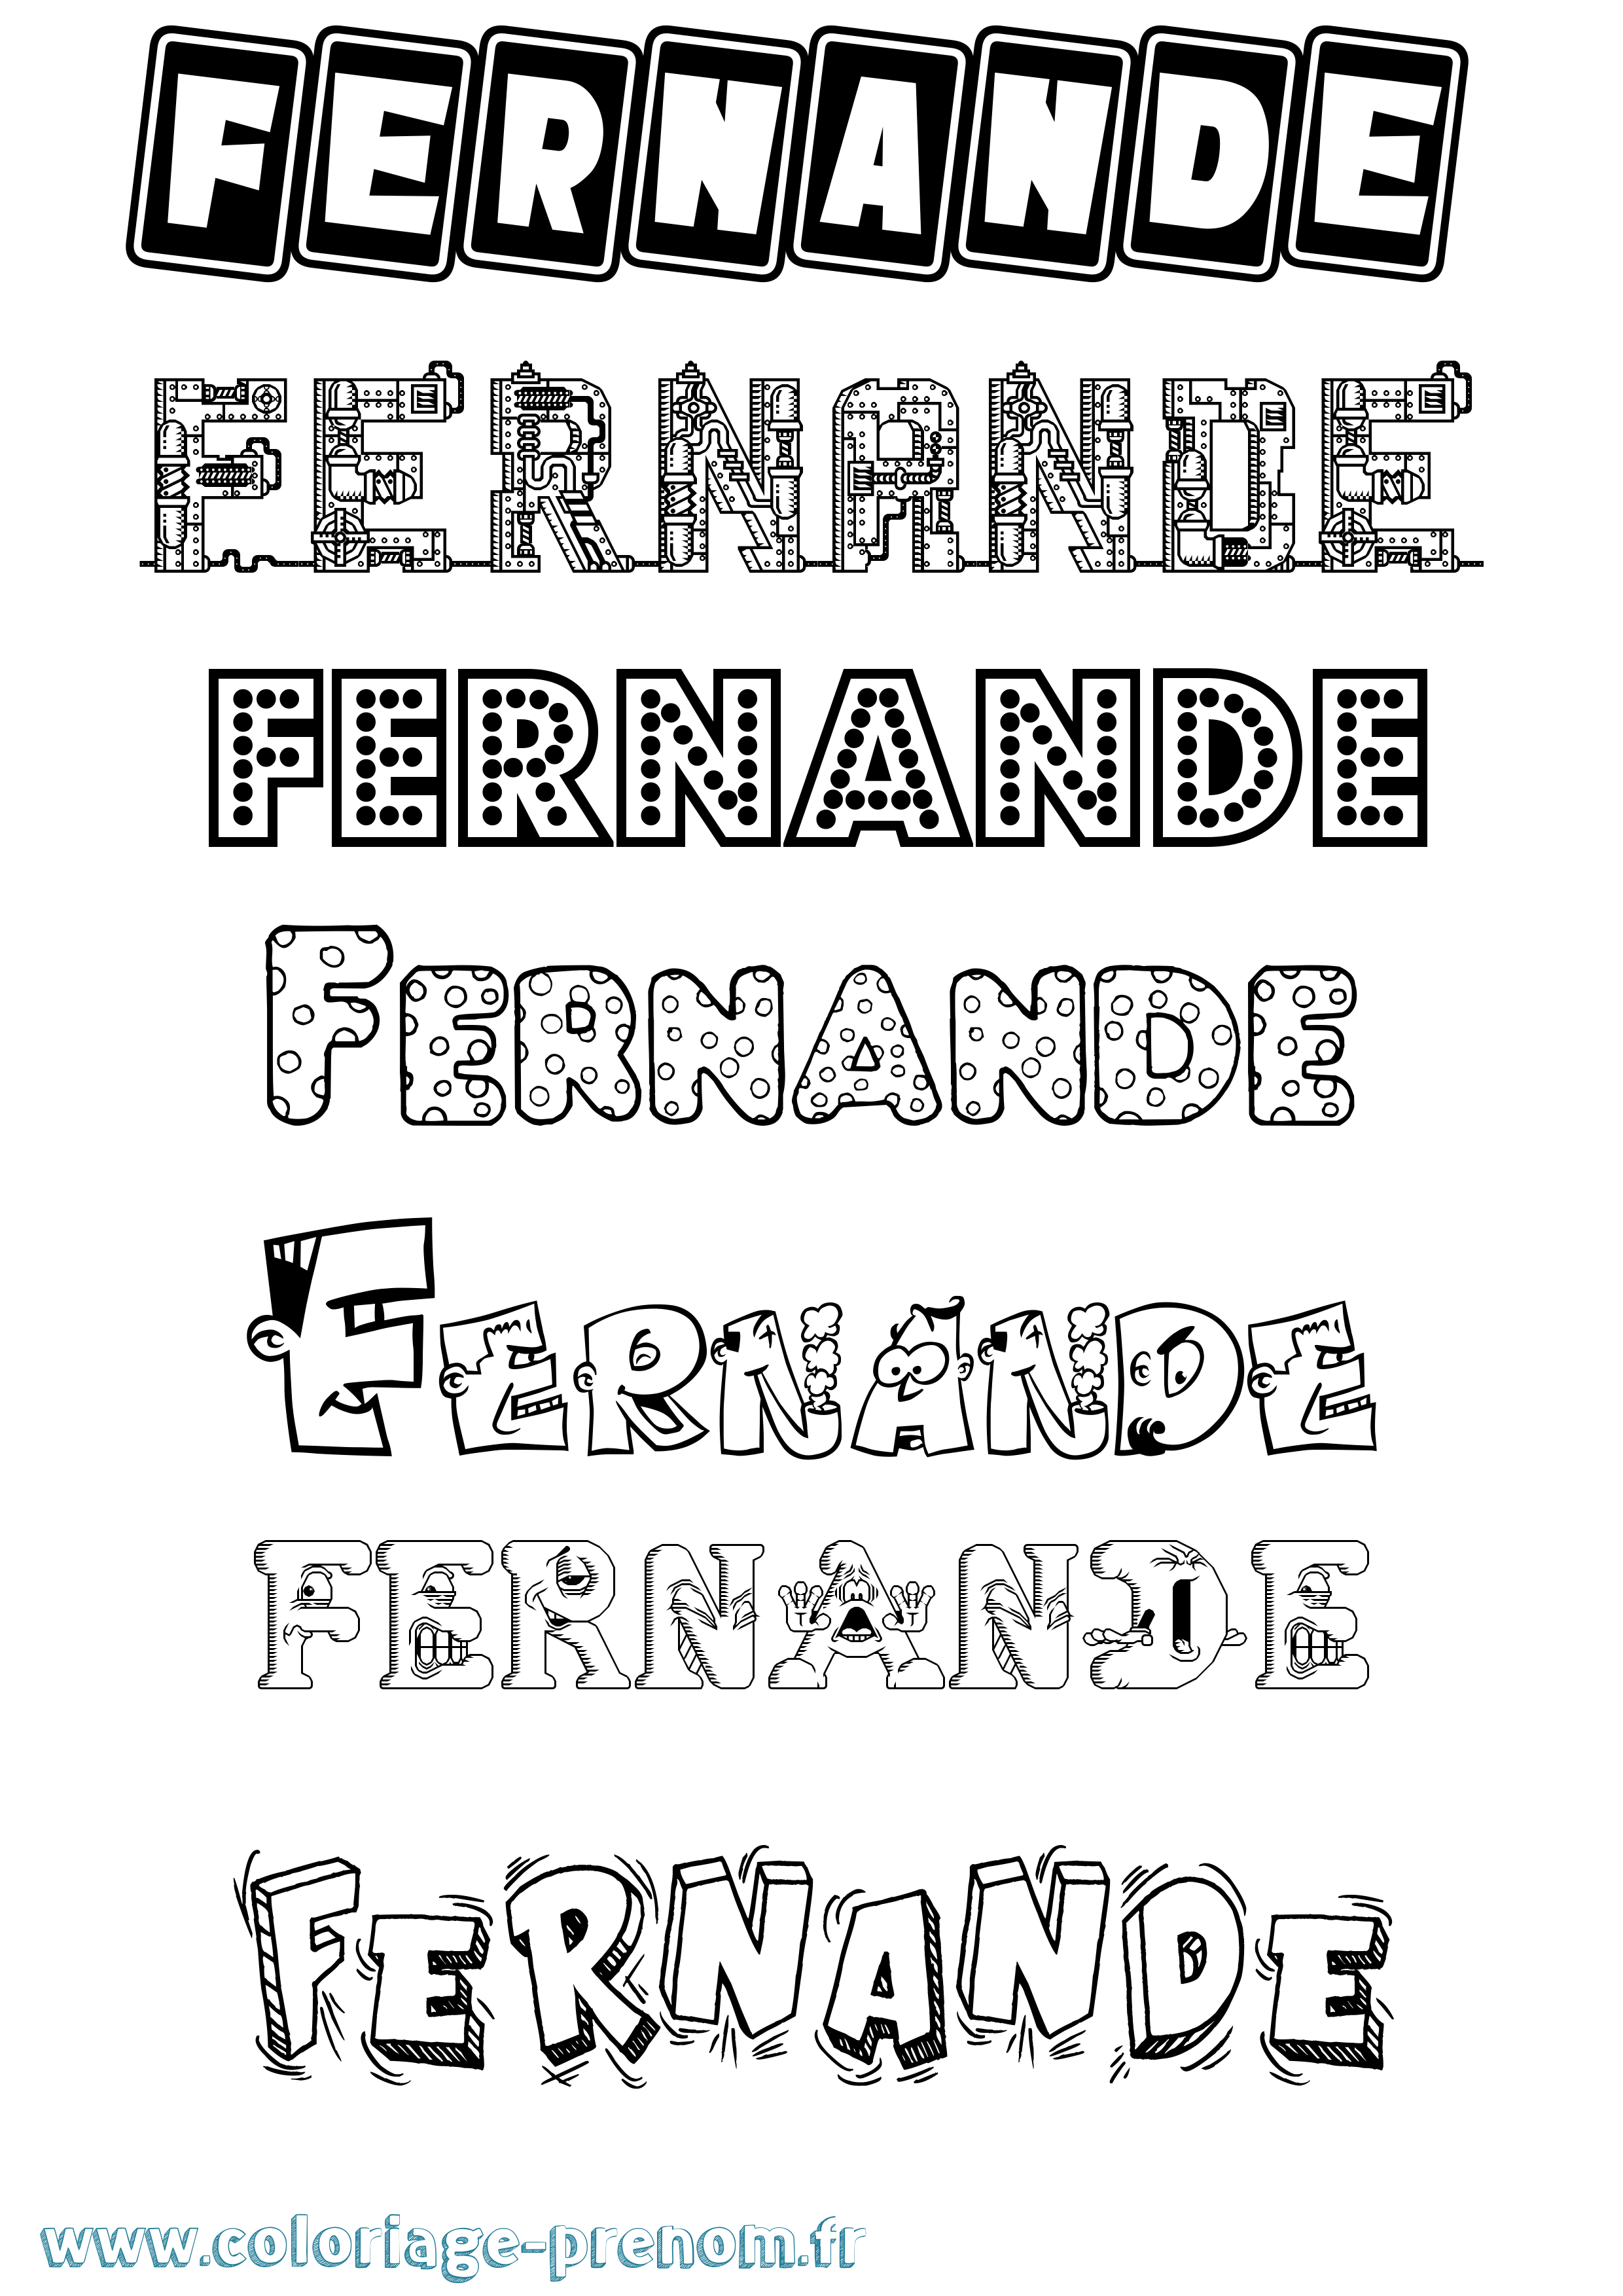 Coloriage prénom Fernande Fun